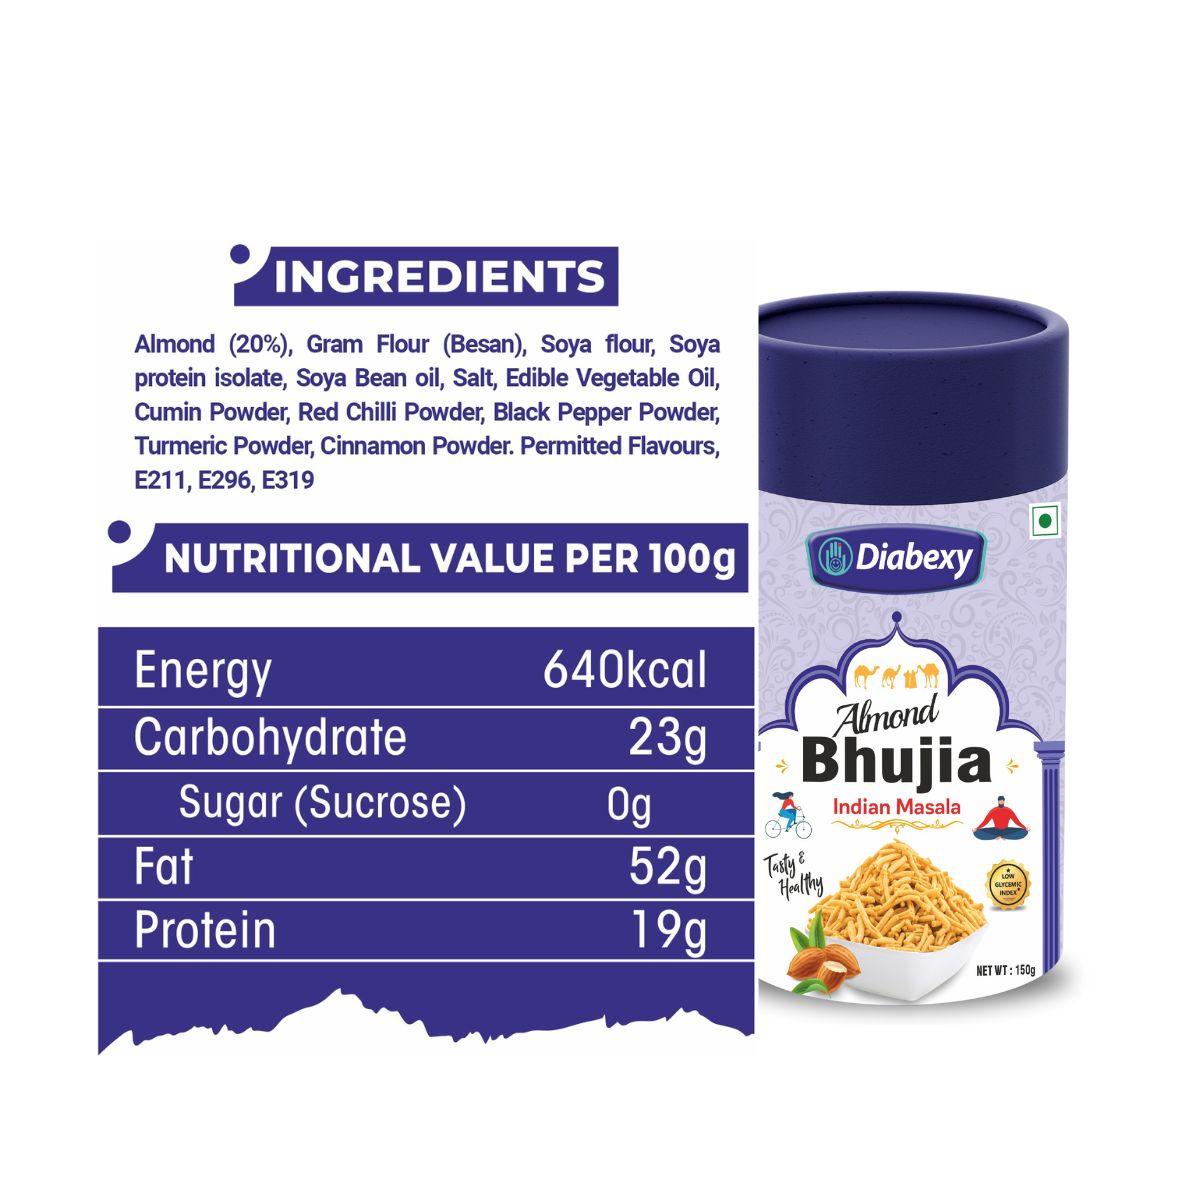 Diabexy Almond Bhujia | Indian Masala Flavor - Diabexy